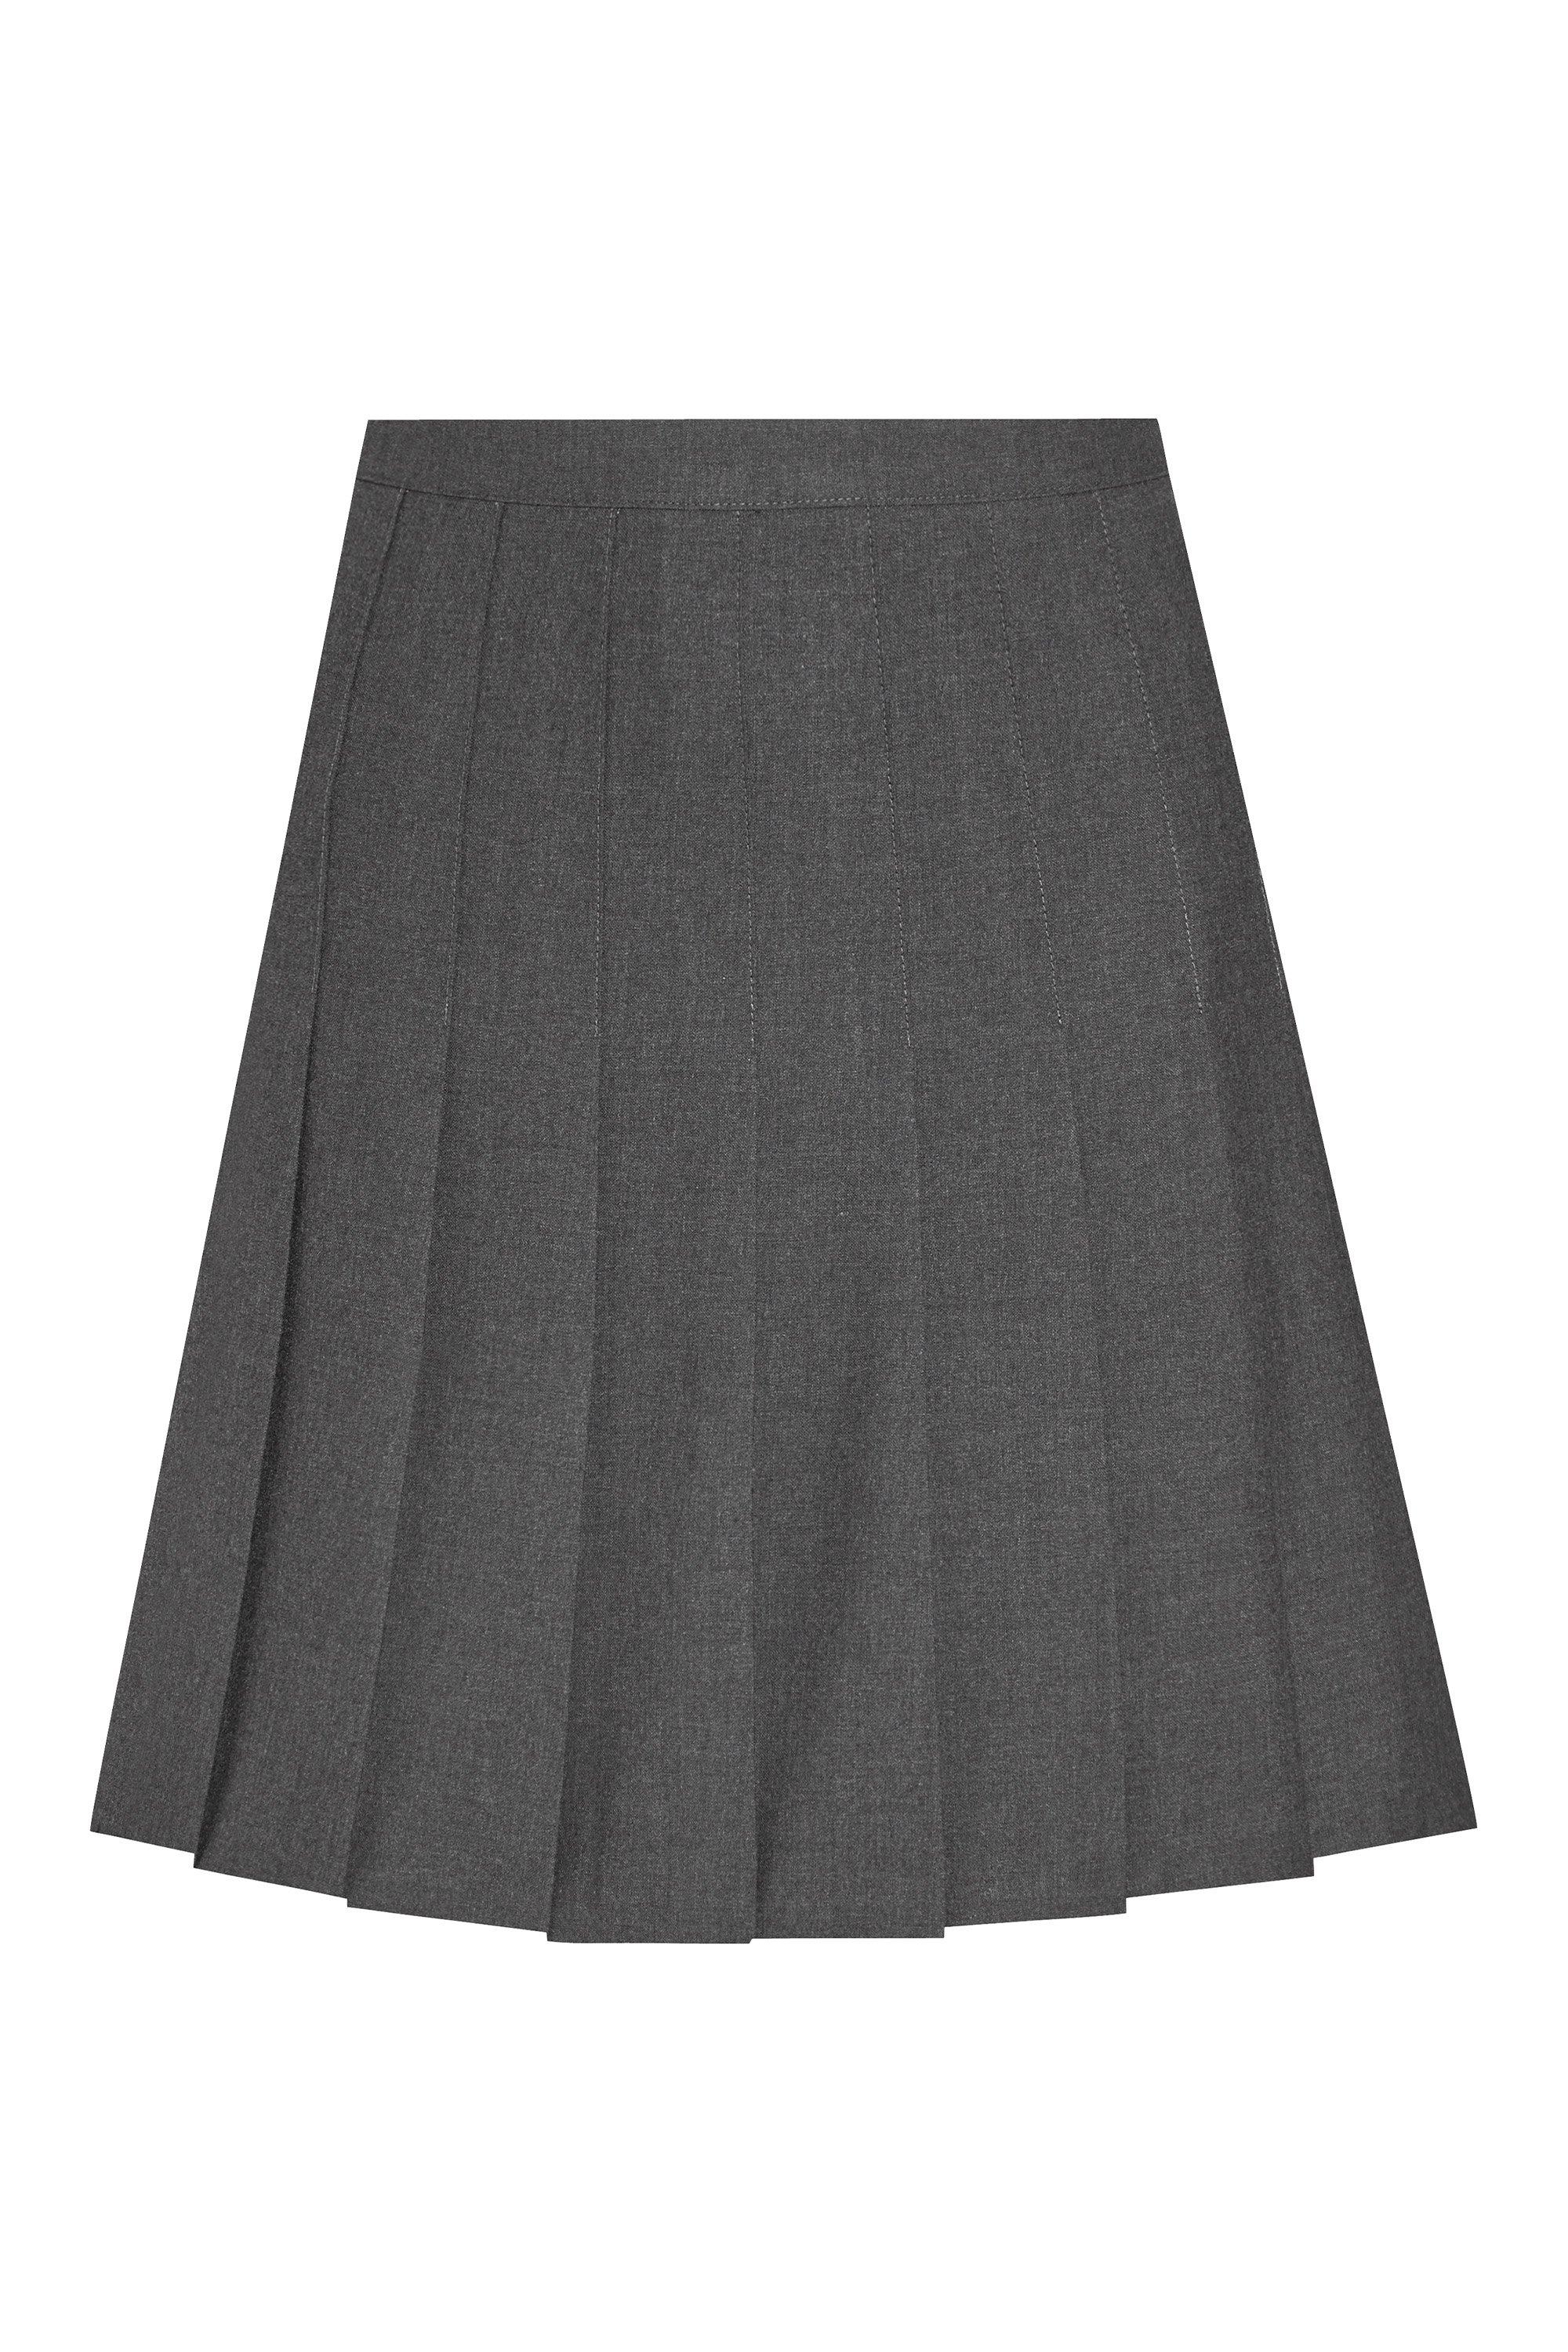 Плиссированная школьная юбка David Luke, серый